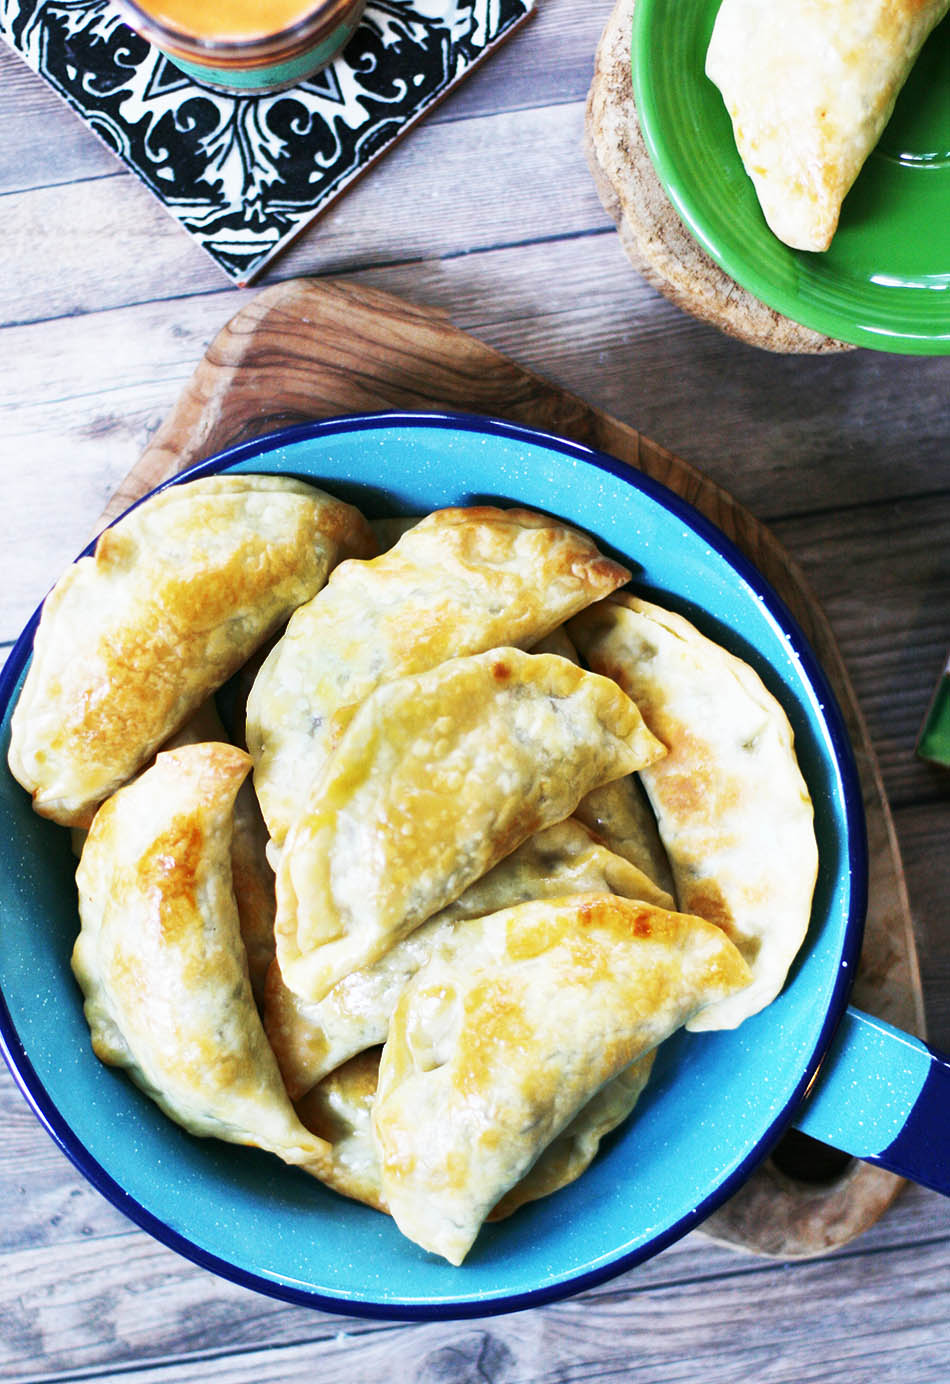 How to make empanadas - the easy way! Click through for recipe.